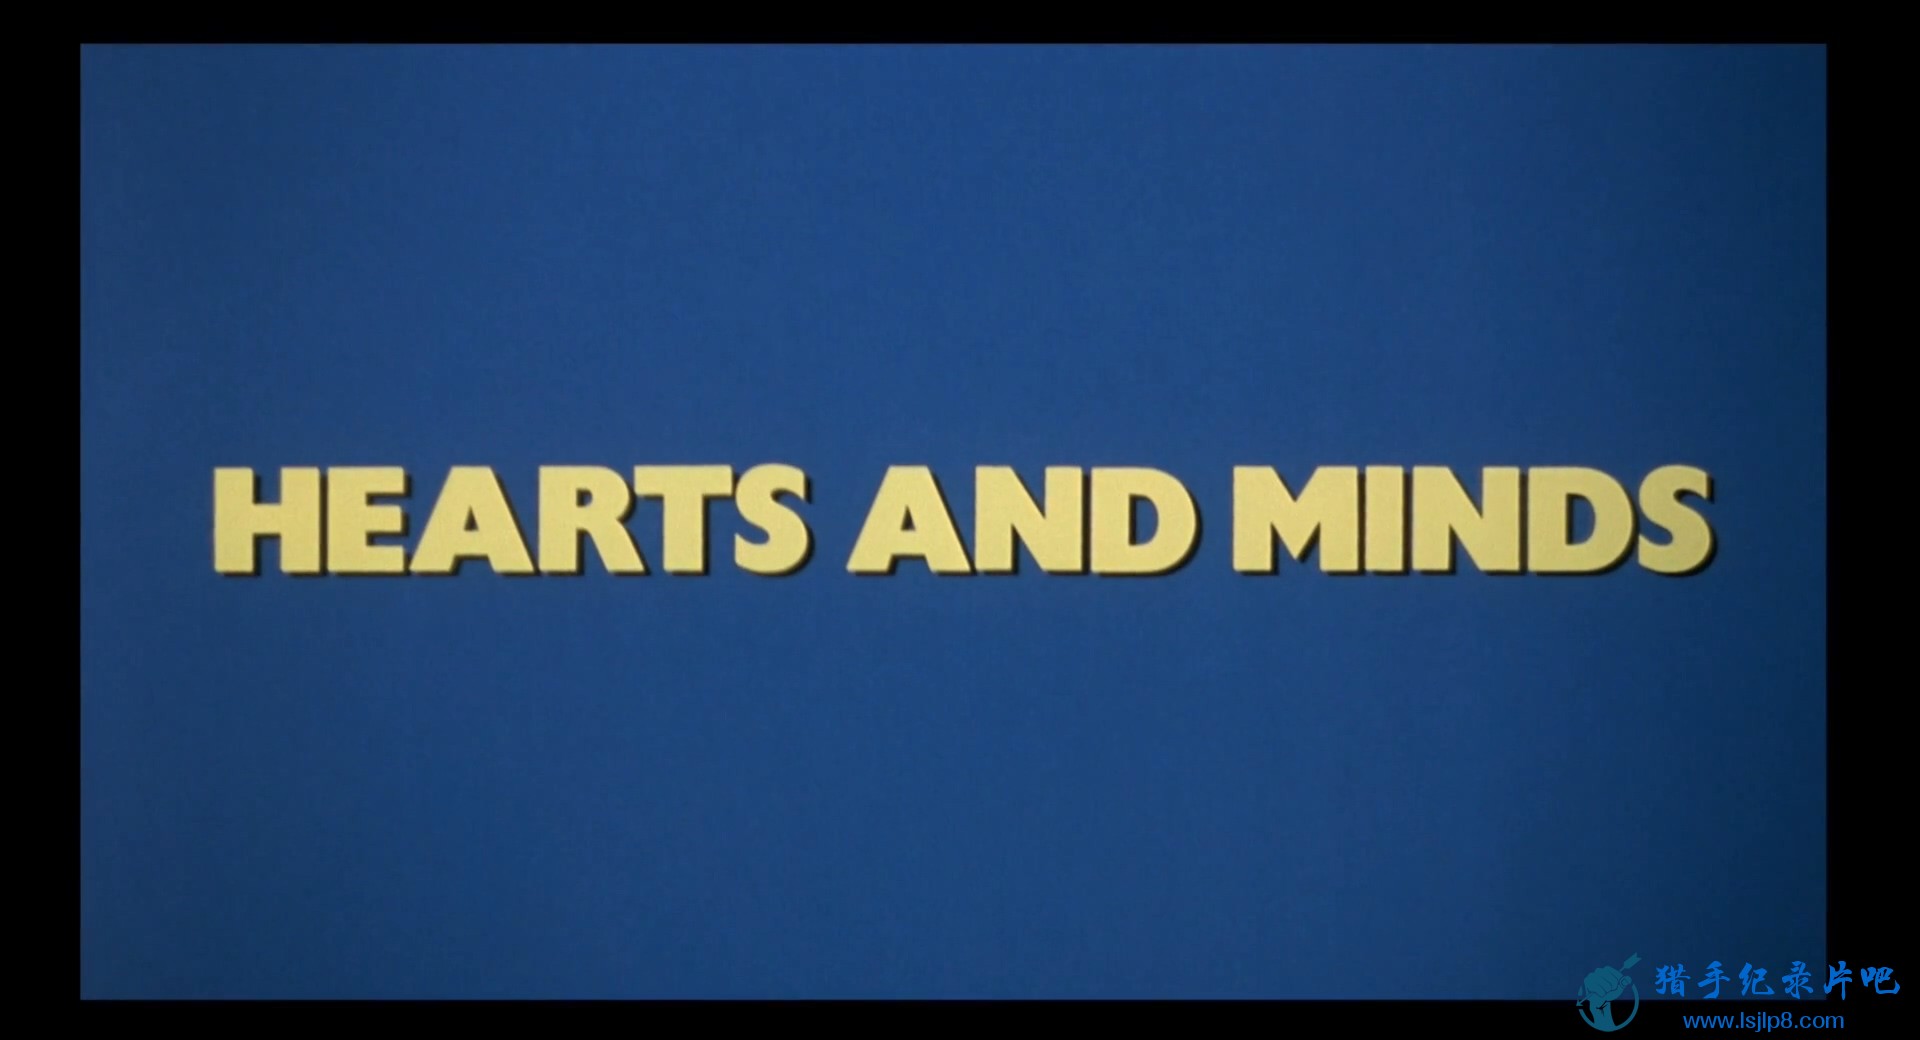 Hearts.and.Minds.1974.1080p.BluRay.x264-HD4U.mkv_20220128_115411.545.jpg